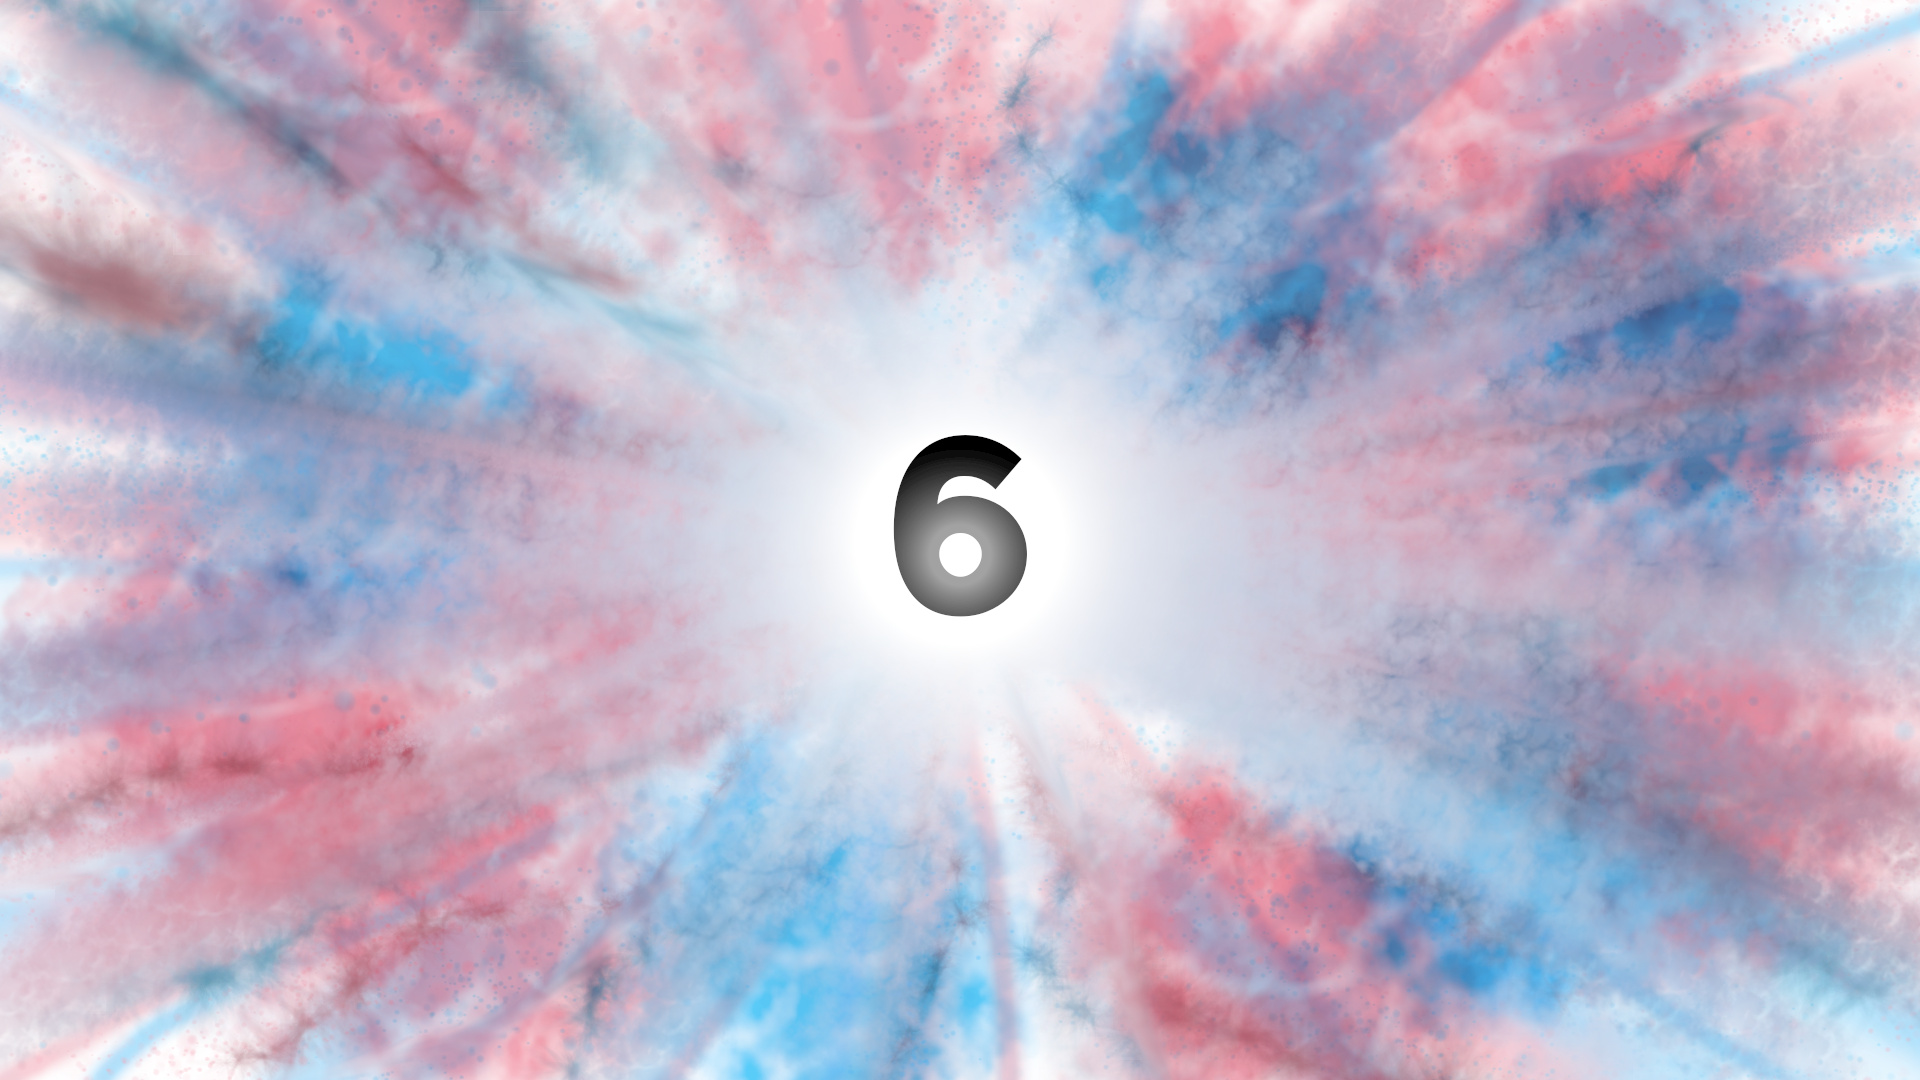 Le chiffre 6 sur un fond tricolore (rose, cyan et blanc, les couleurs trans)